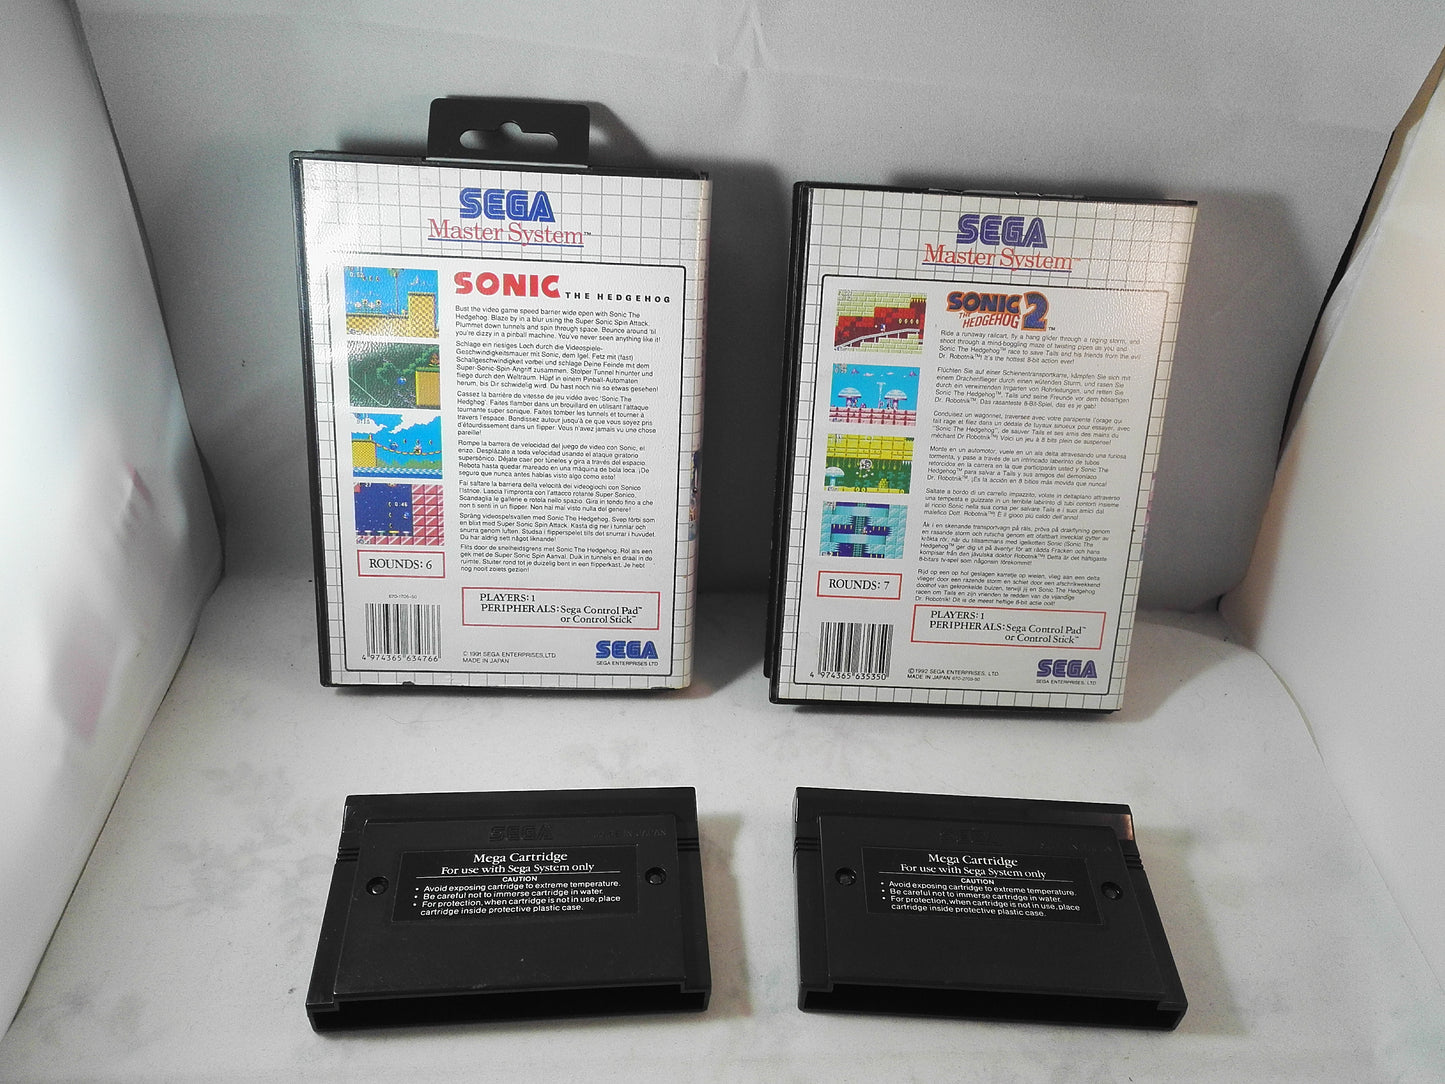 Sonic The Hedgehog 1 & 2 (Sega Master System) Game bundle